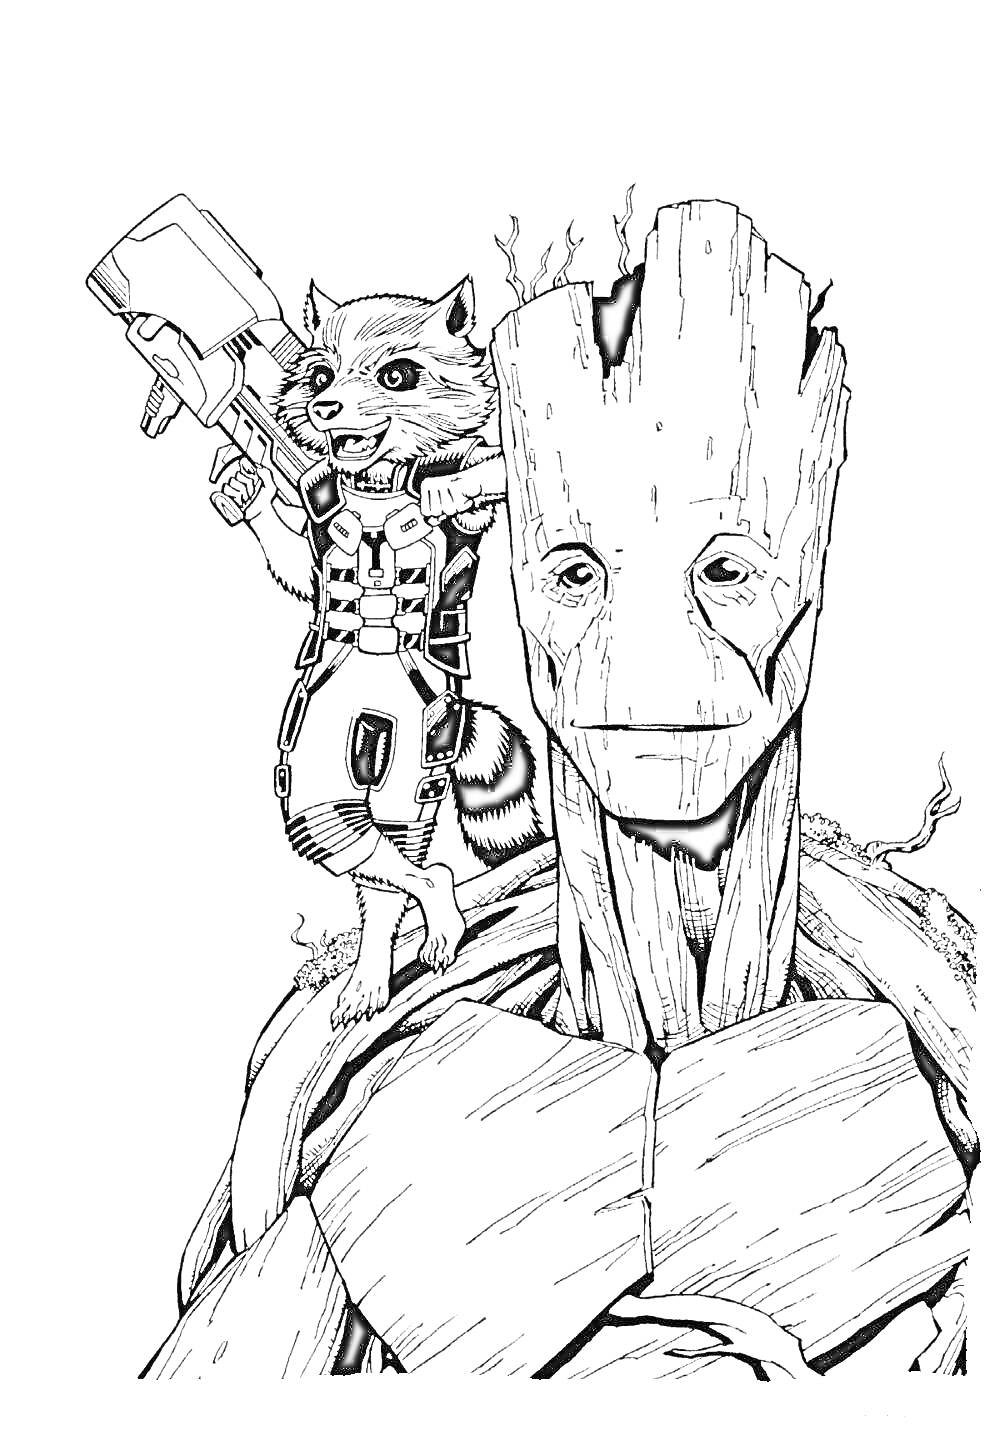 Раскраска Енот с оружием на плечах у дерева-человека